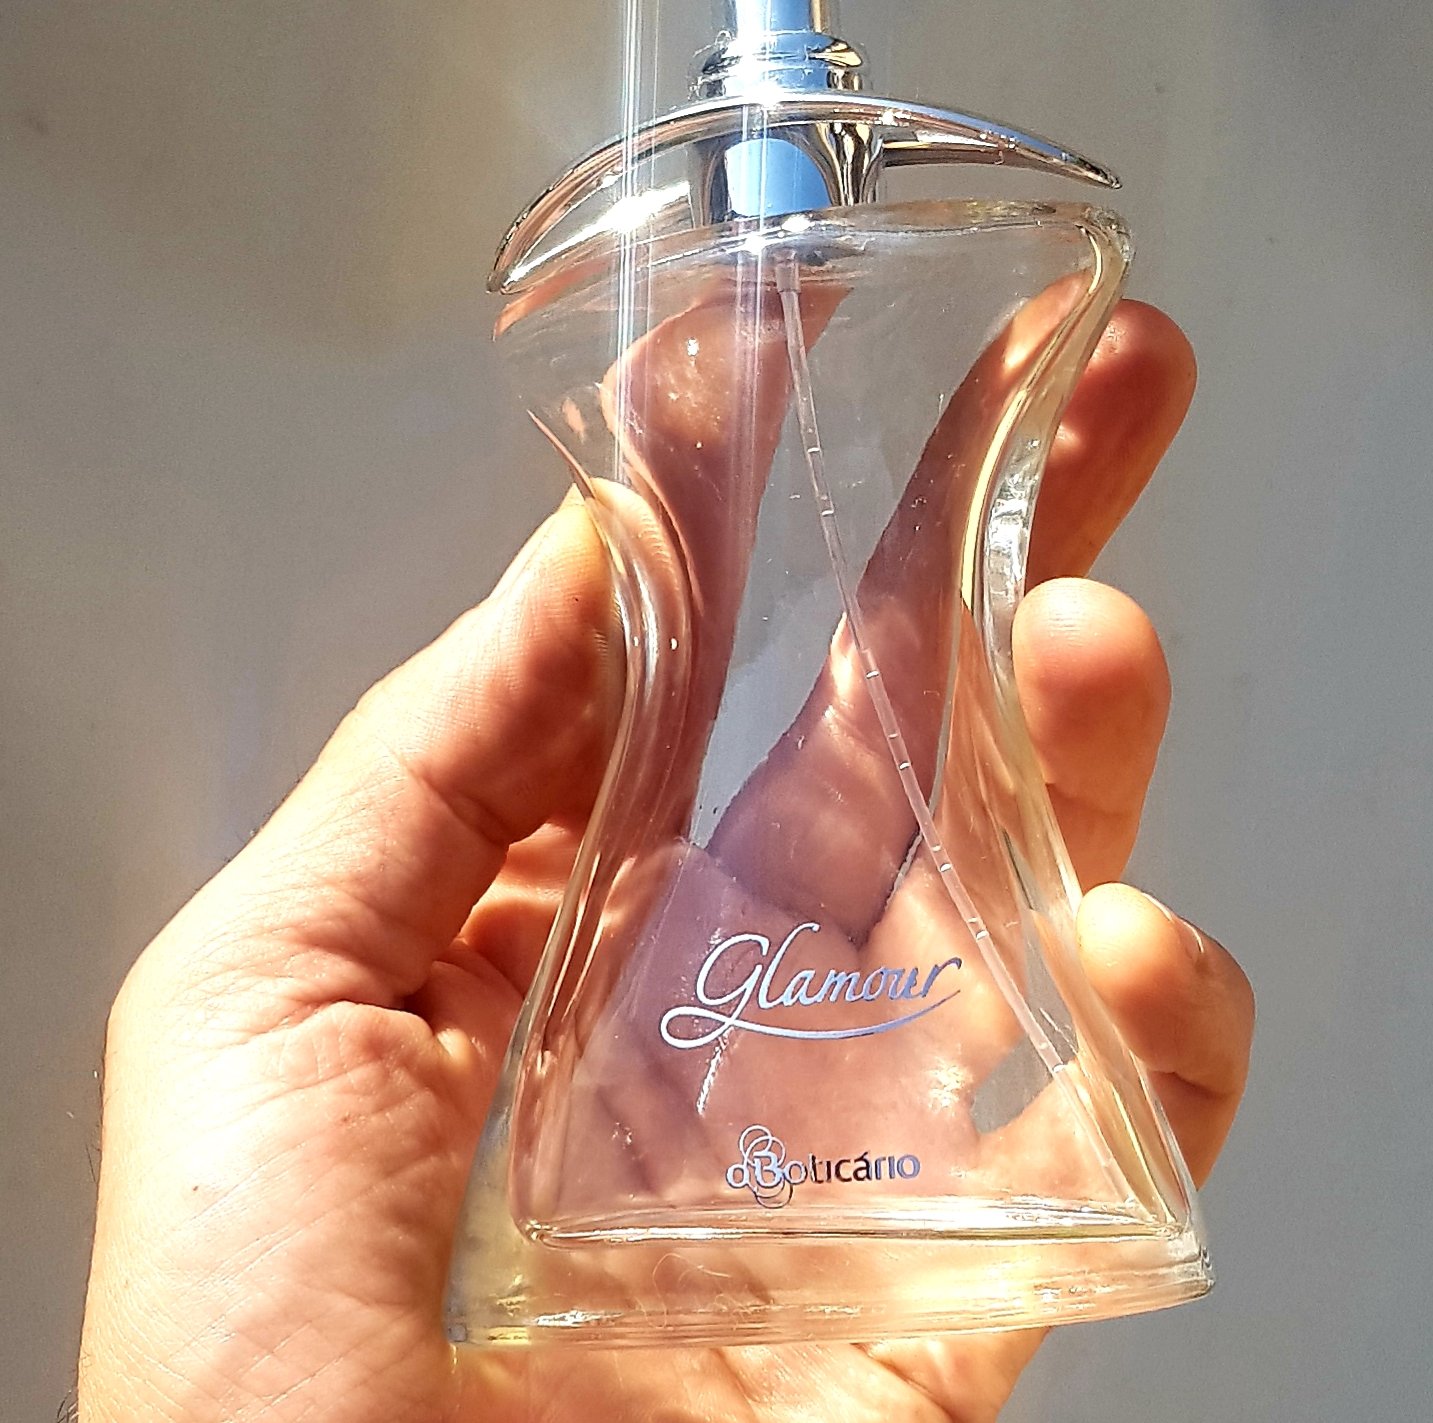 O Boticário Perfume Glamour Review